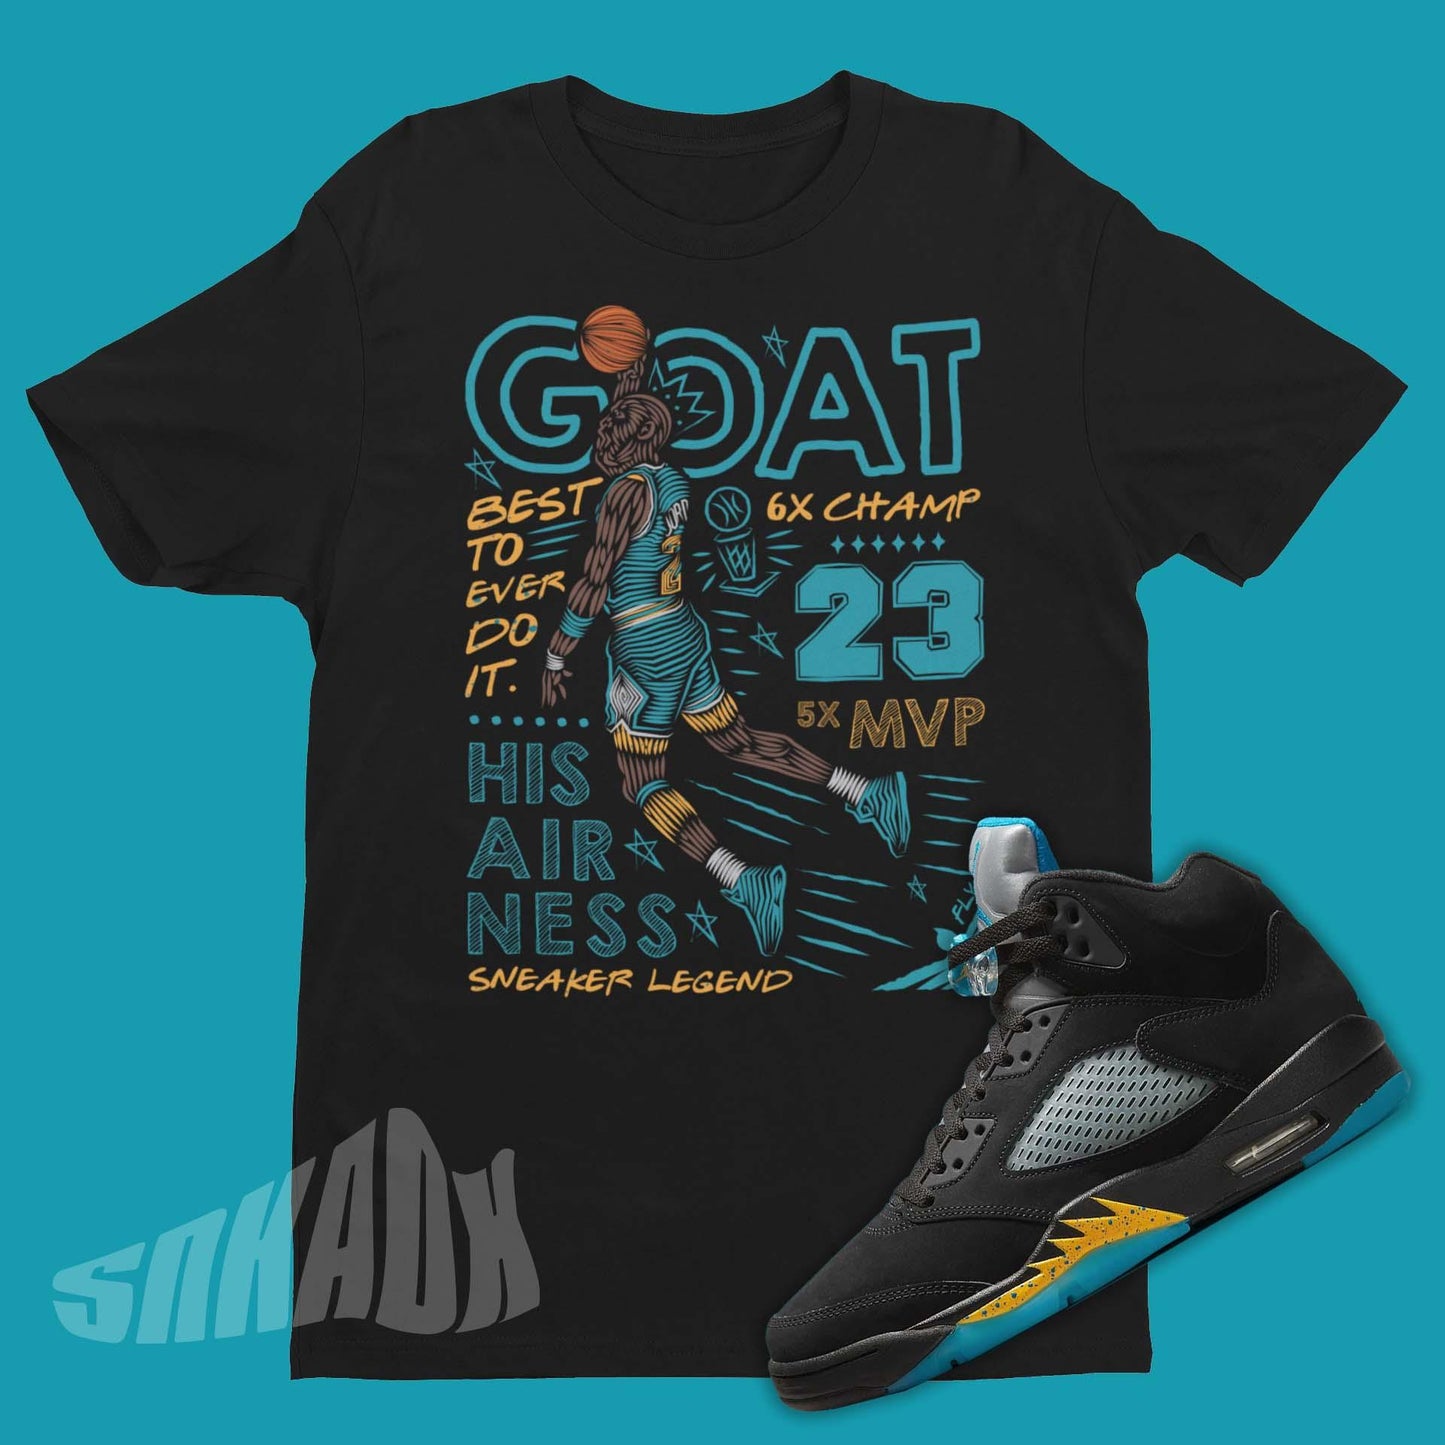 Goat Shirt for Air Jordan 5 Aqua - Shop Now |SNKADX